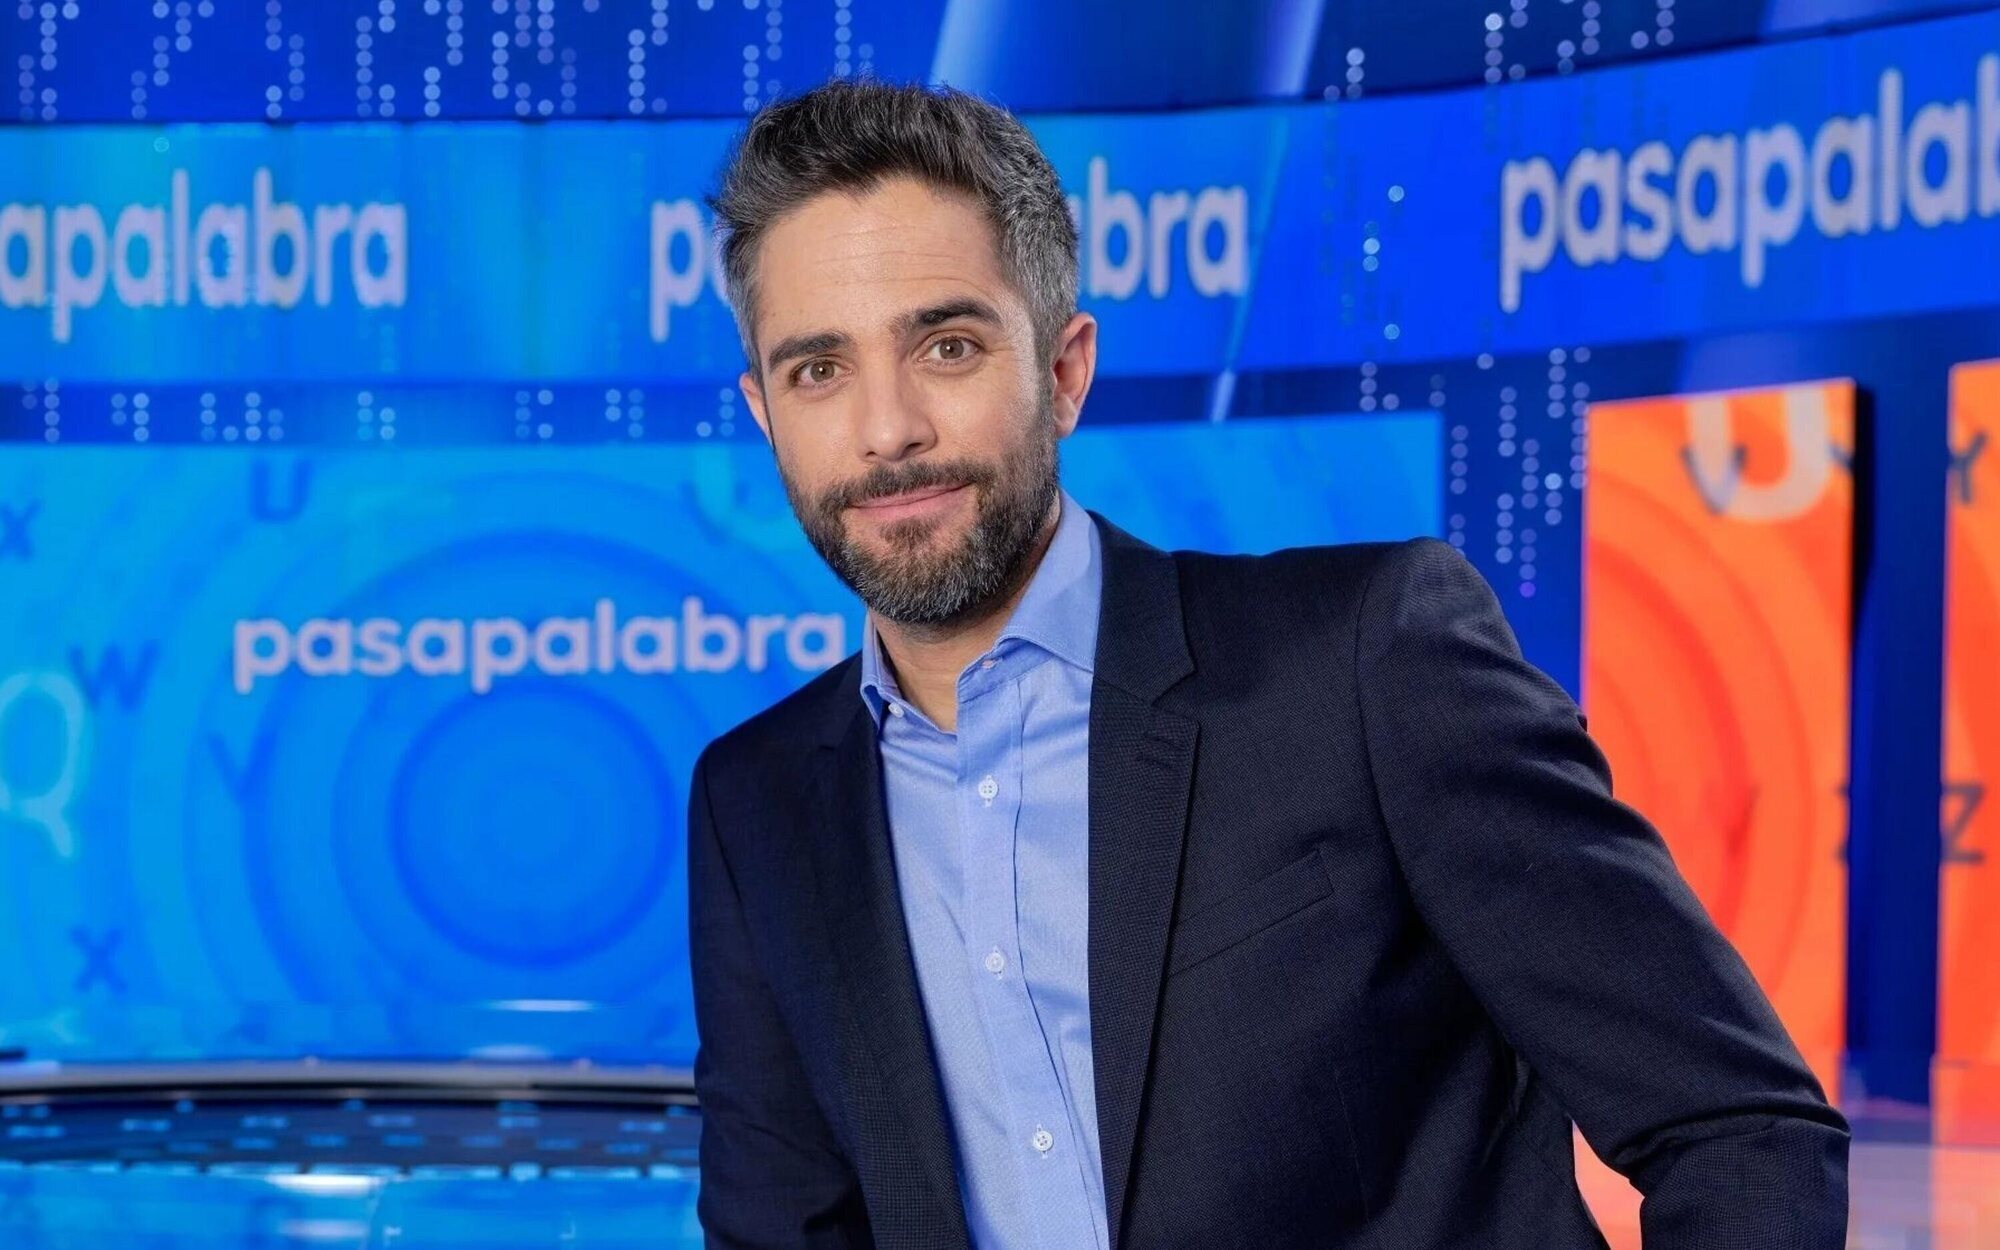 Admitida a trámite la demanda de Mediaset España por la disputa por 'Pasapalabra'